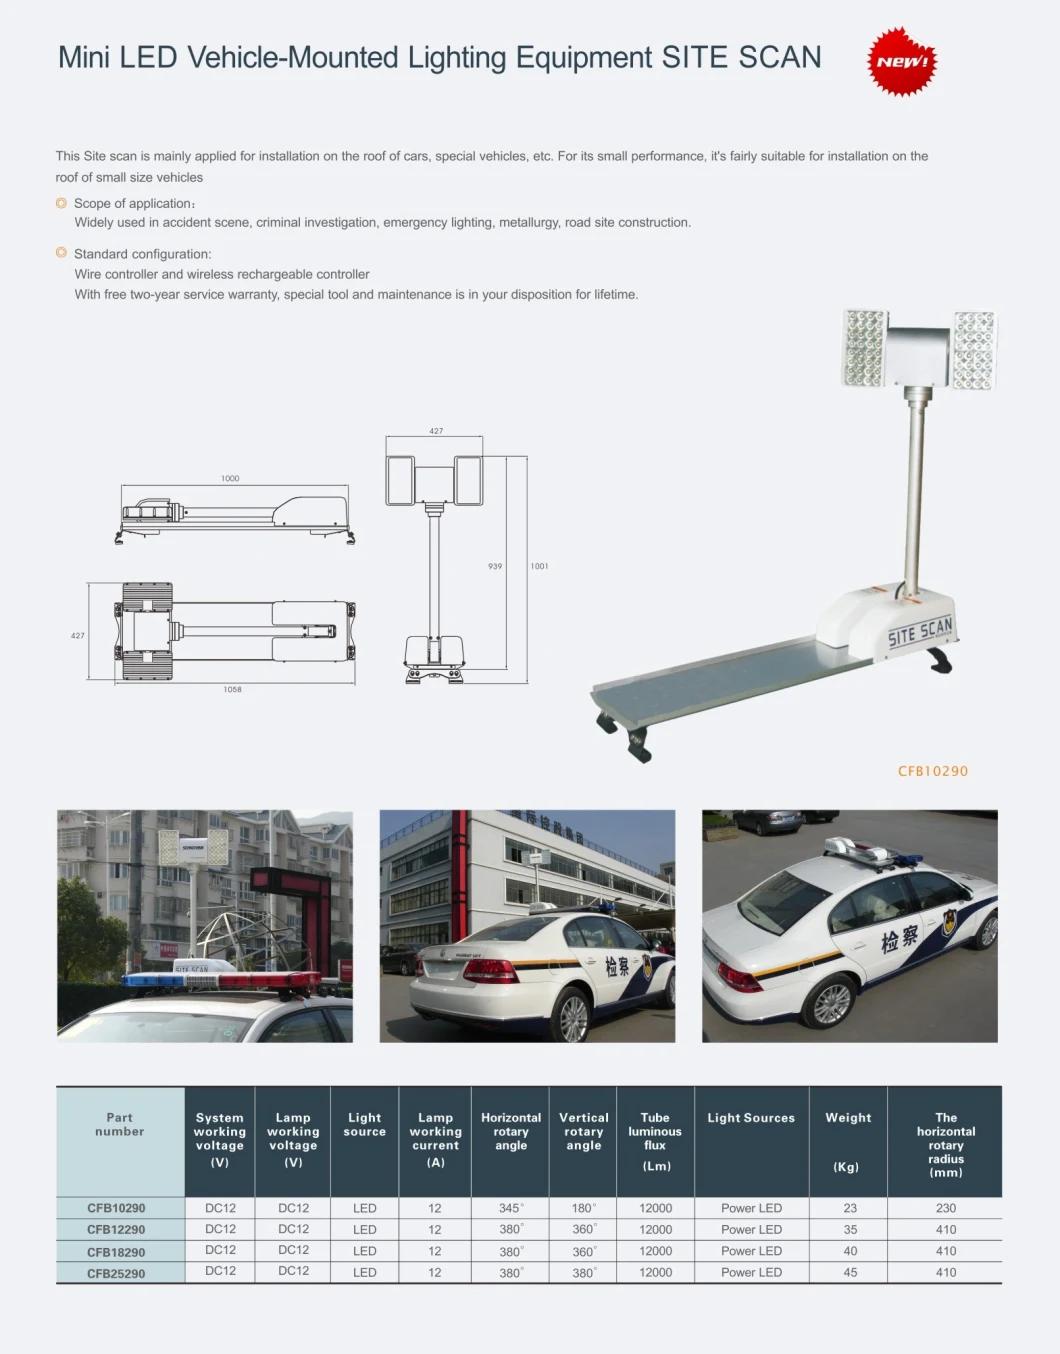 Senken Mini LED Vehicle-Mounted Lighting Equipment Site Scan Light CFB10290